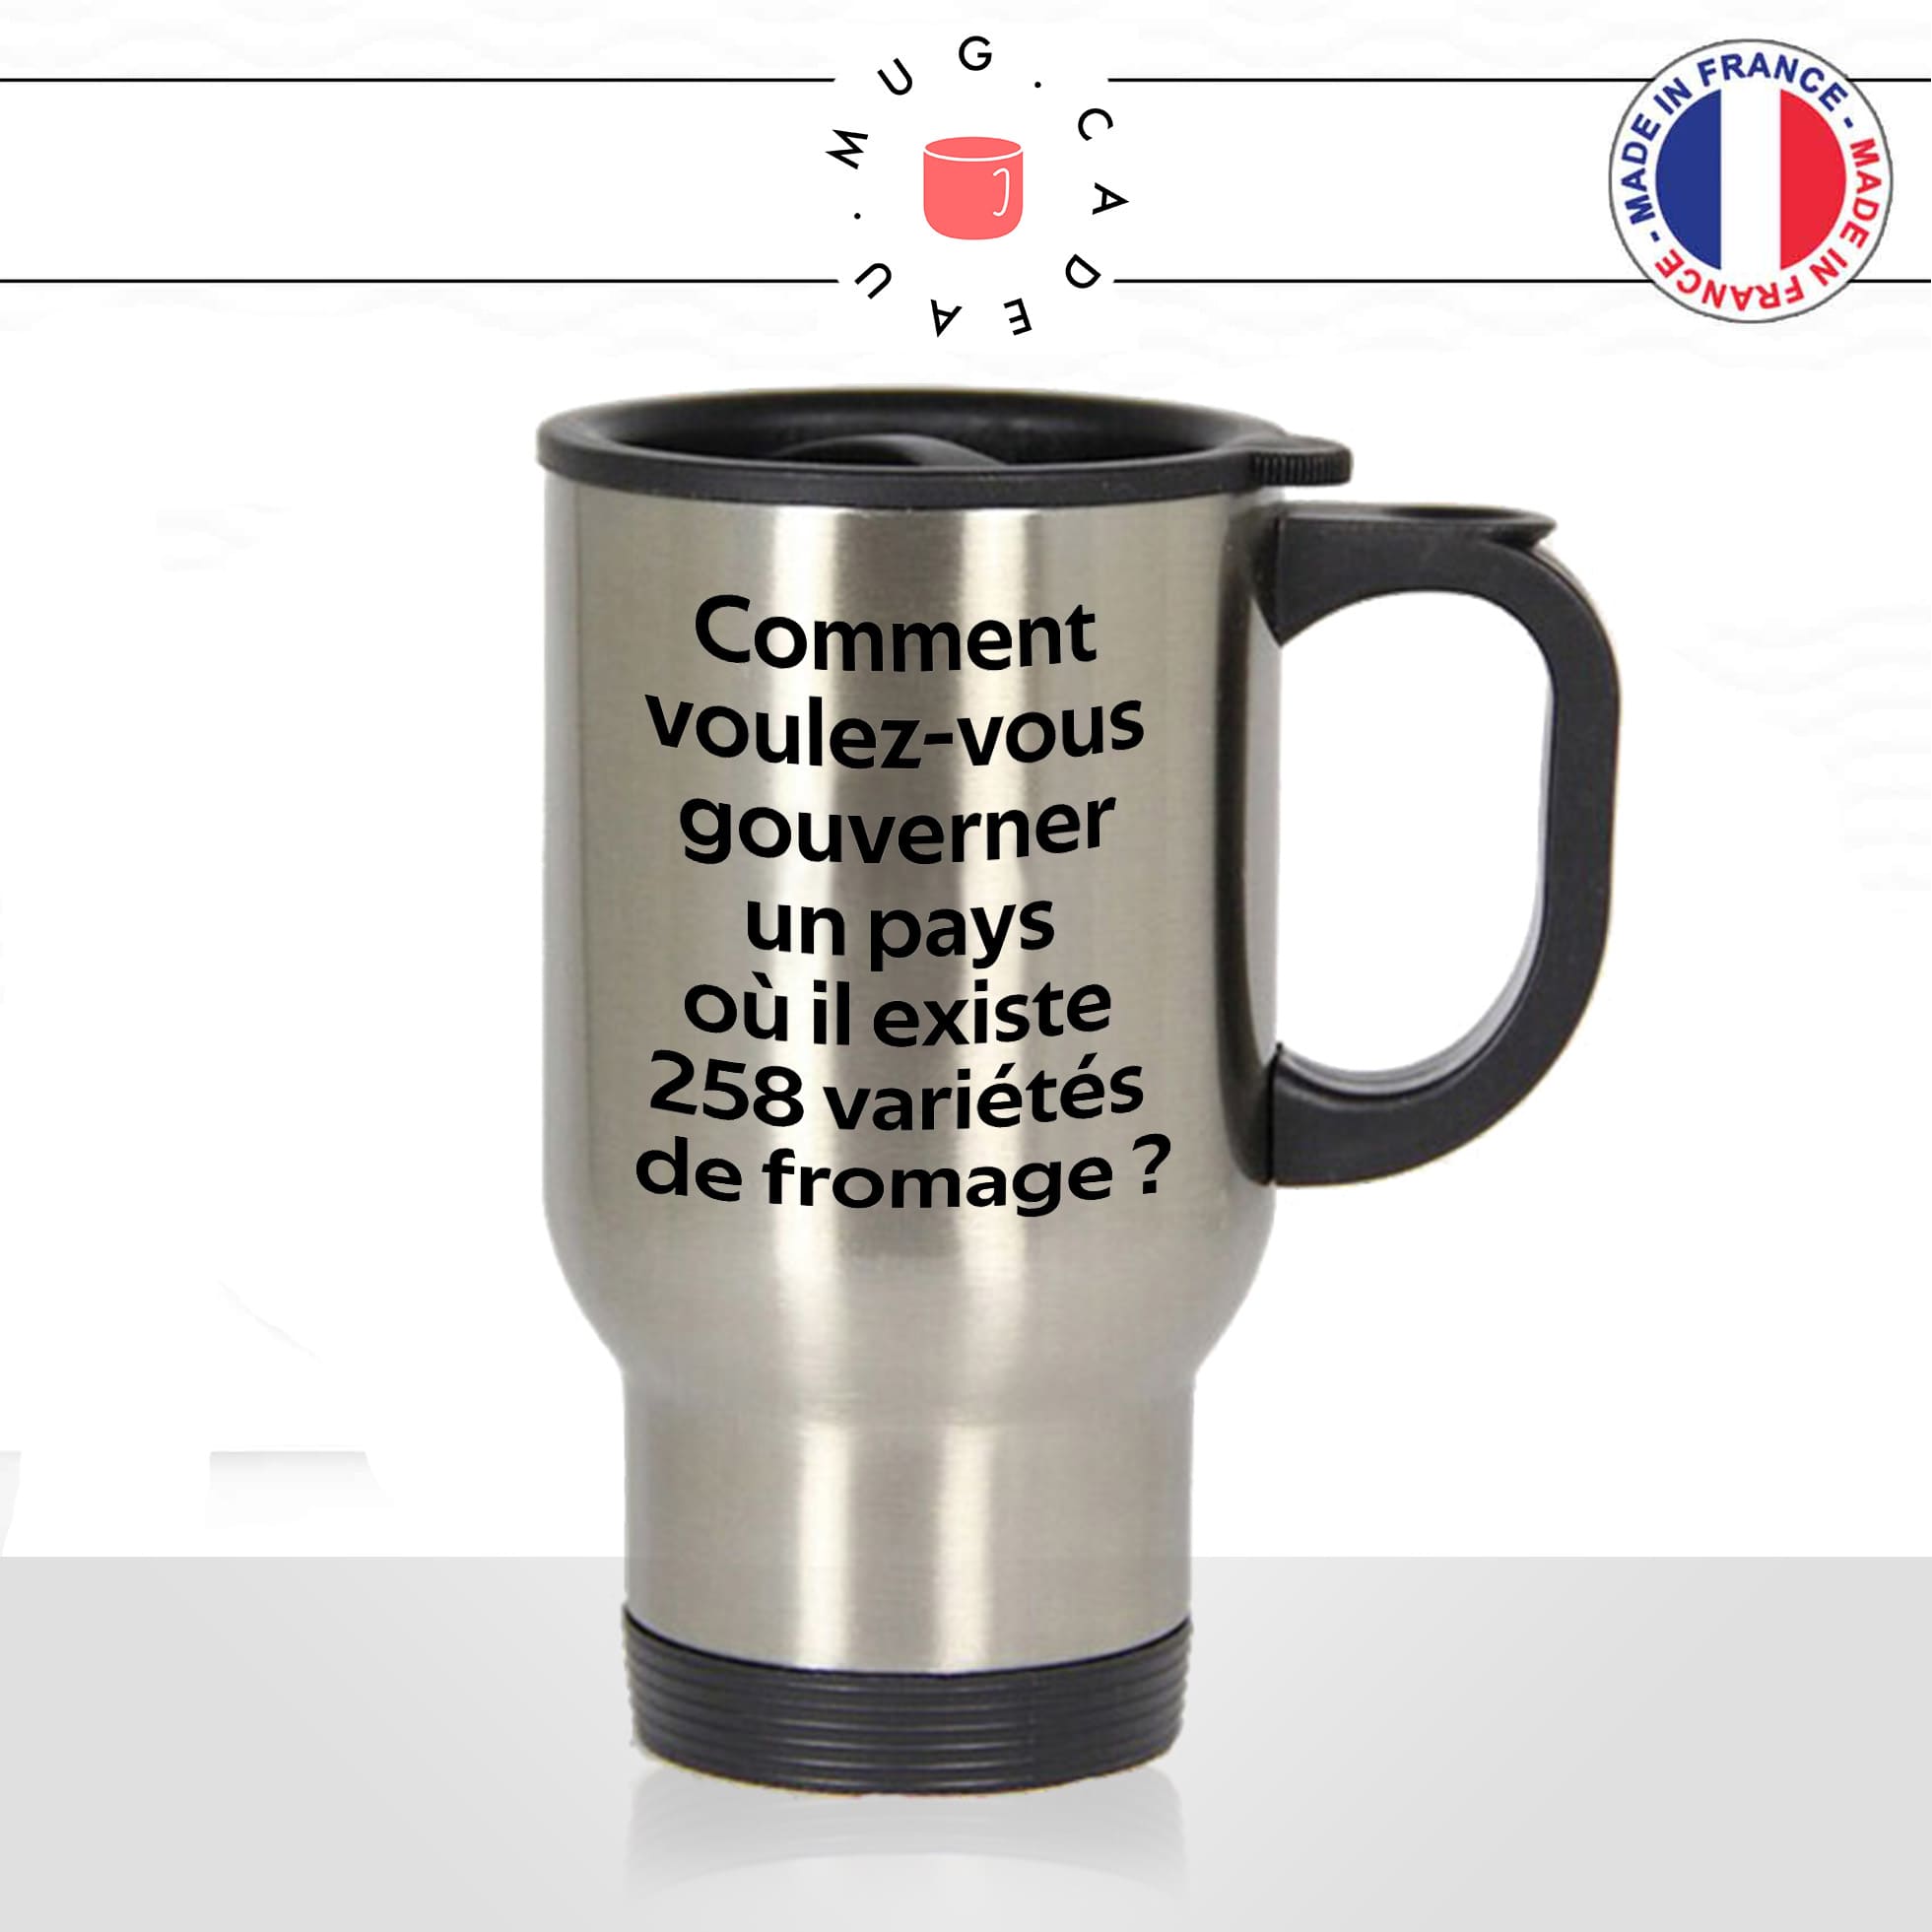 mug-tasse-thermos-isotherme-voyage-citation-charles-de-gaulle-gouverner-un-pays-variétés-de-fromage-humour-fun-idée-cadeau-originale-cool2